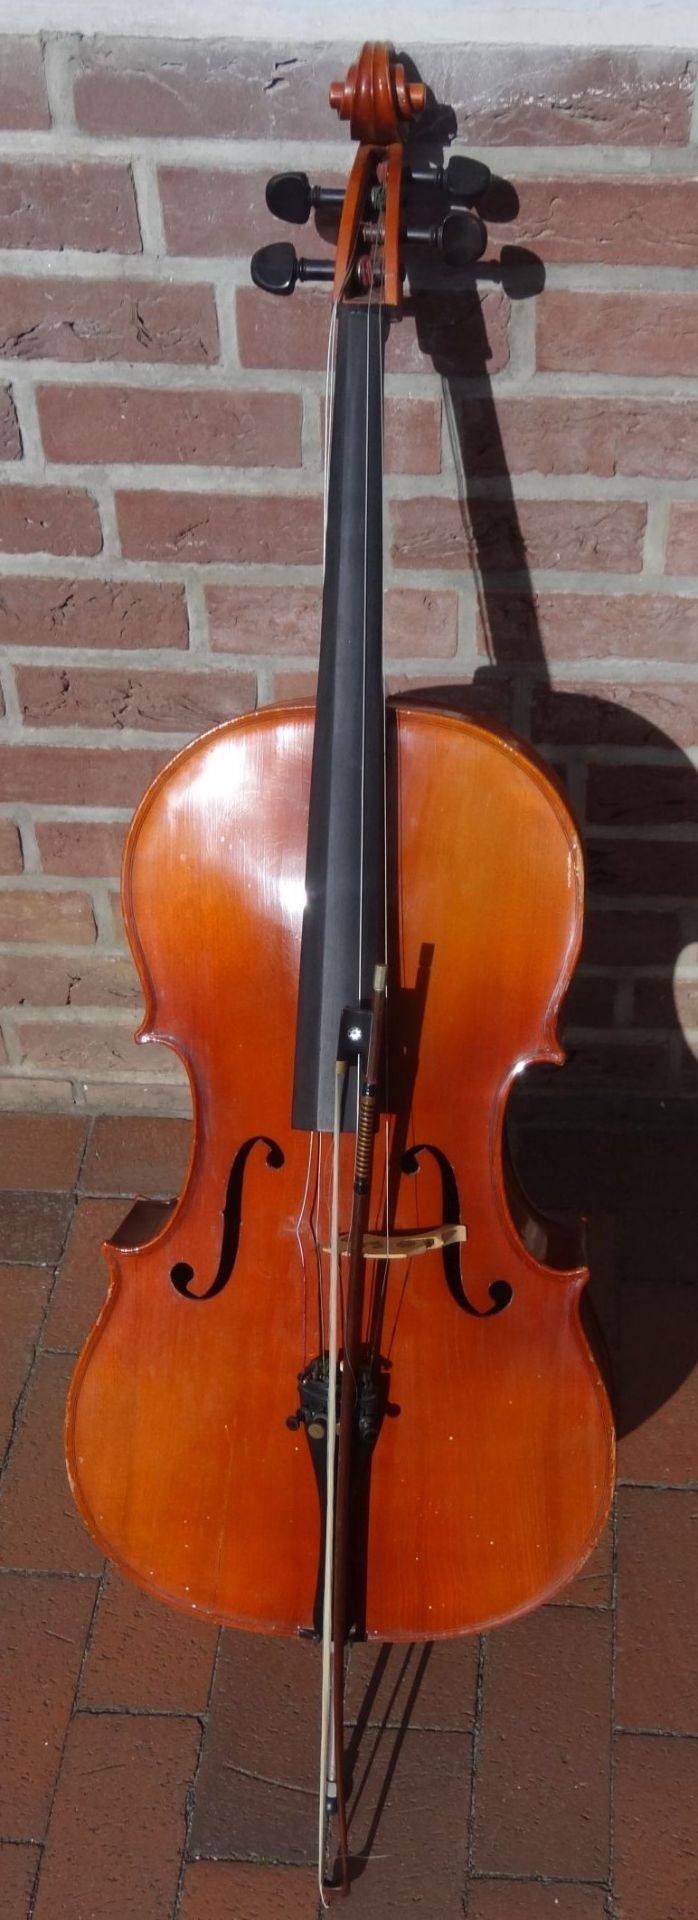 Cello mit Bogen, Alters-u. Gebrauchsspuren, H-130 cm,